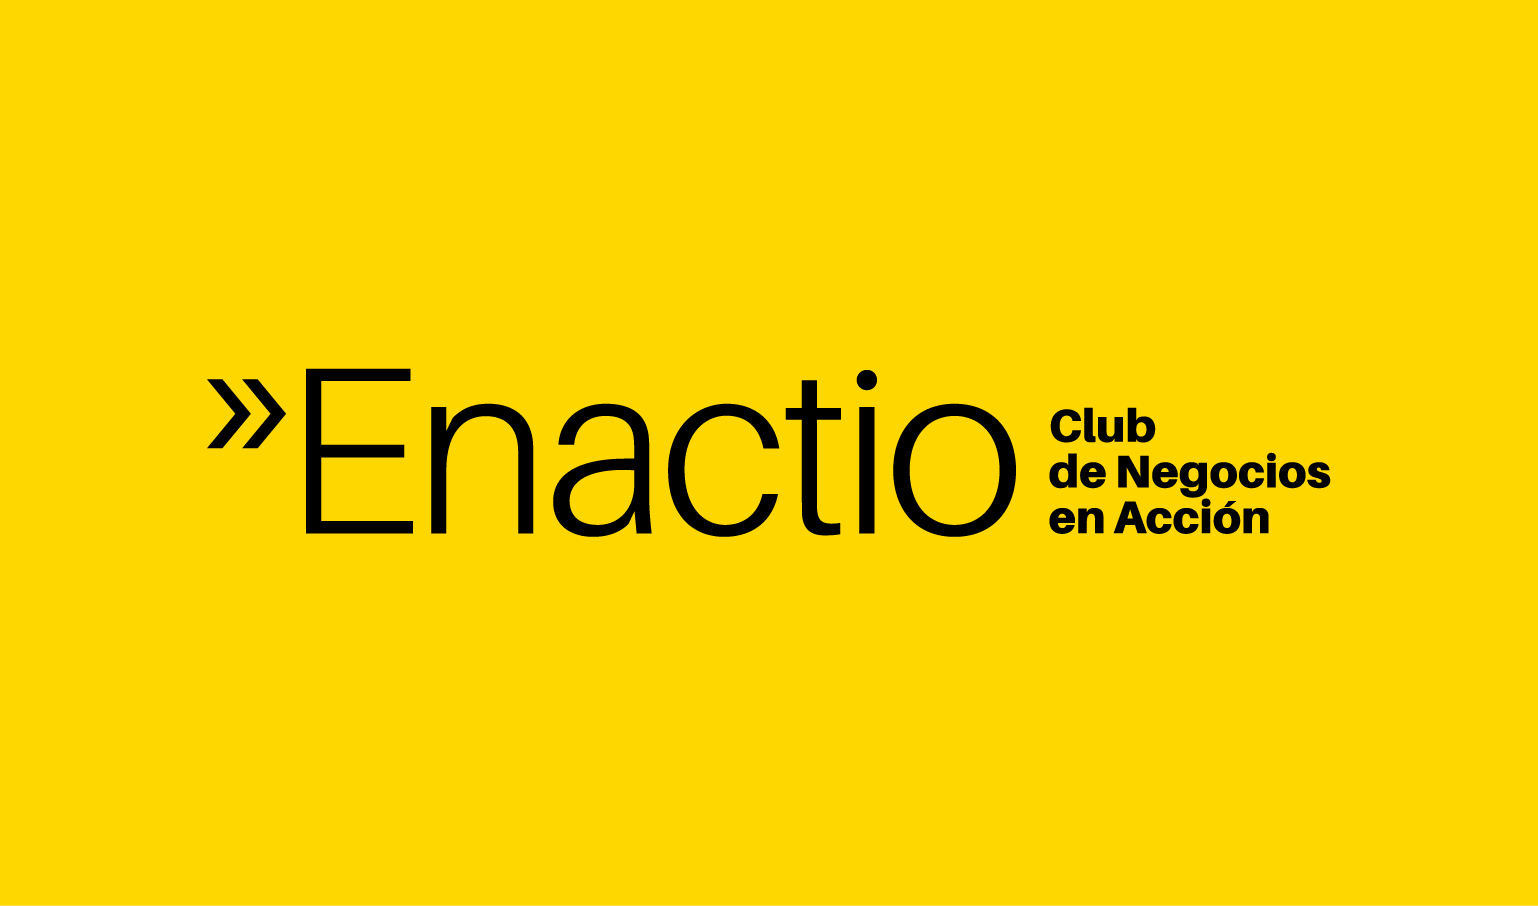 (c) Enactio.com